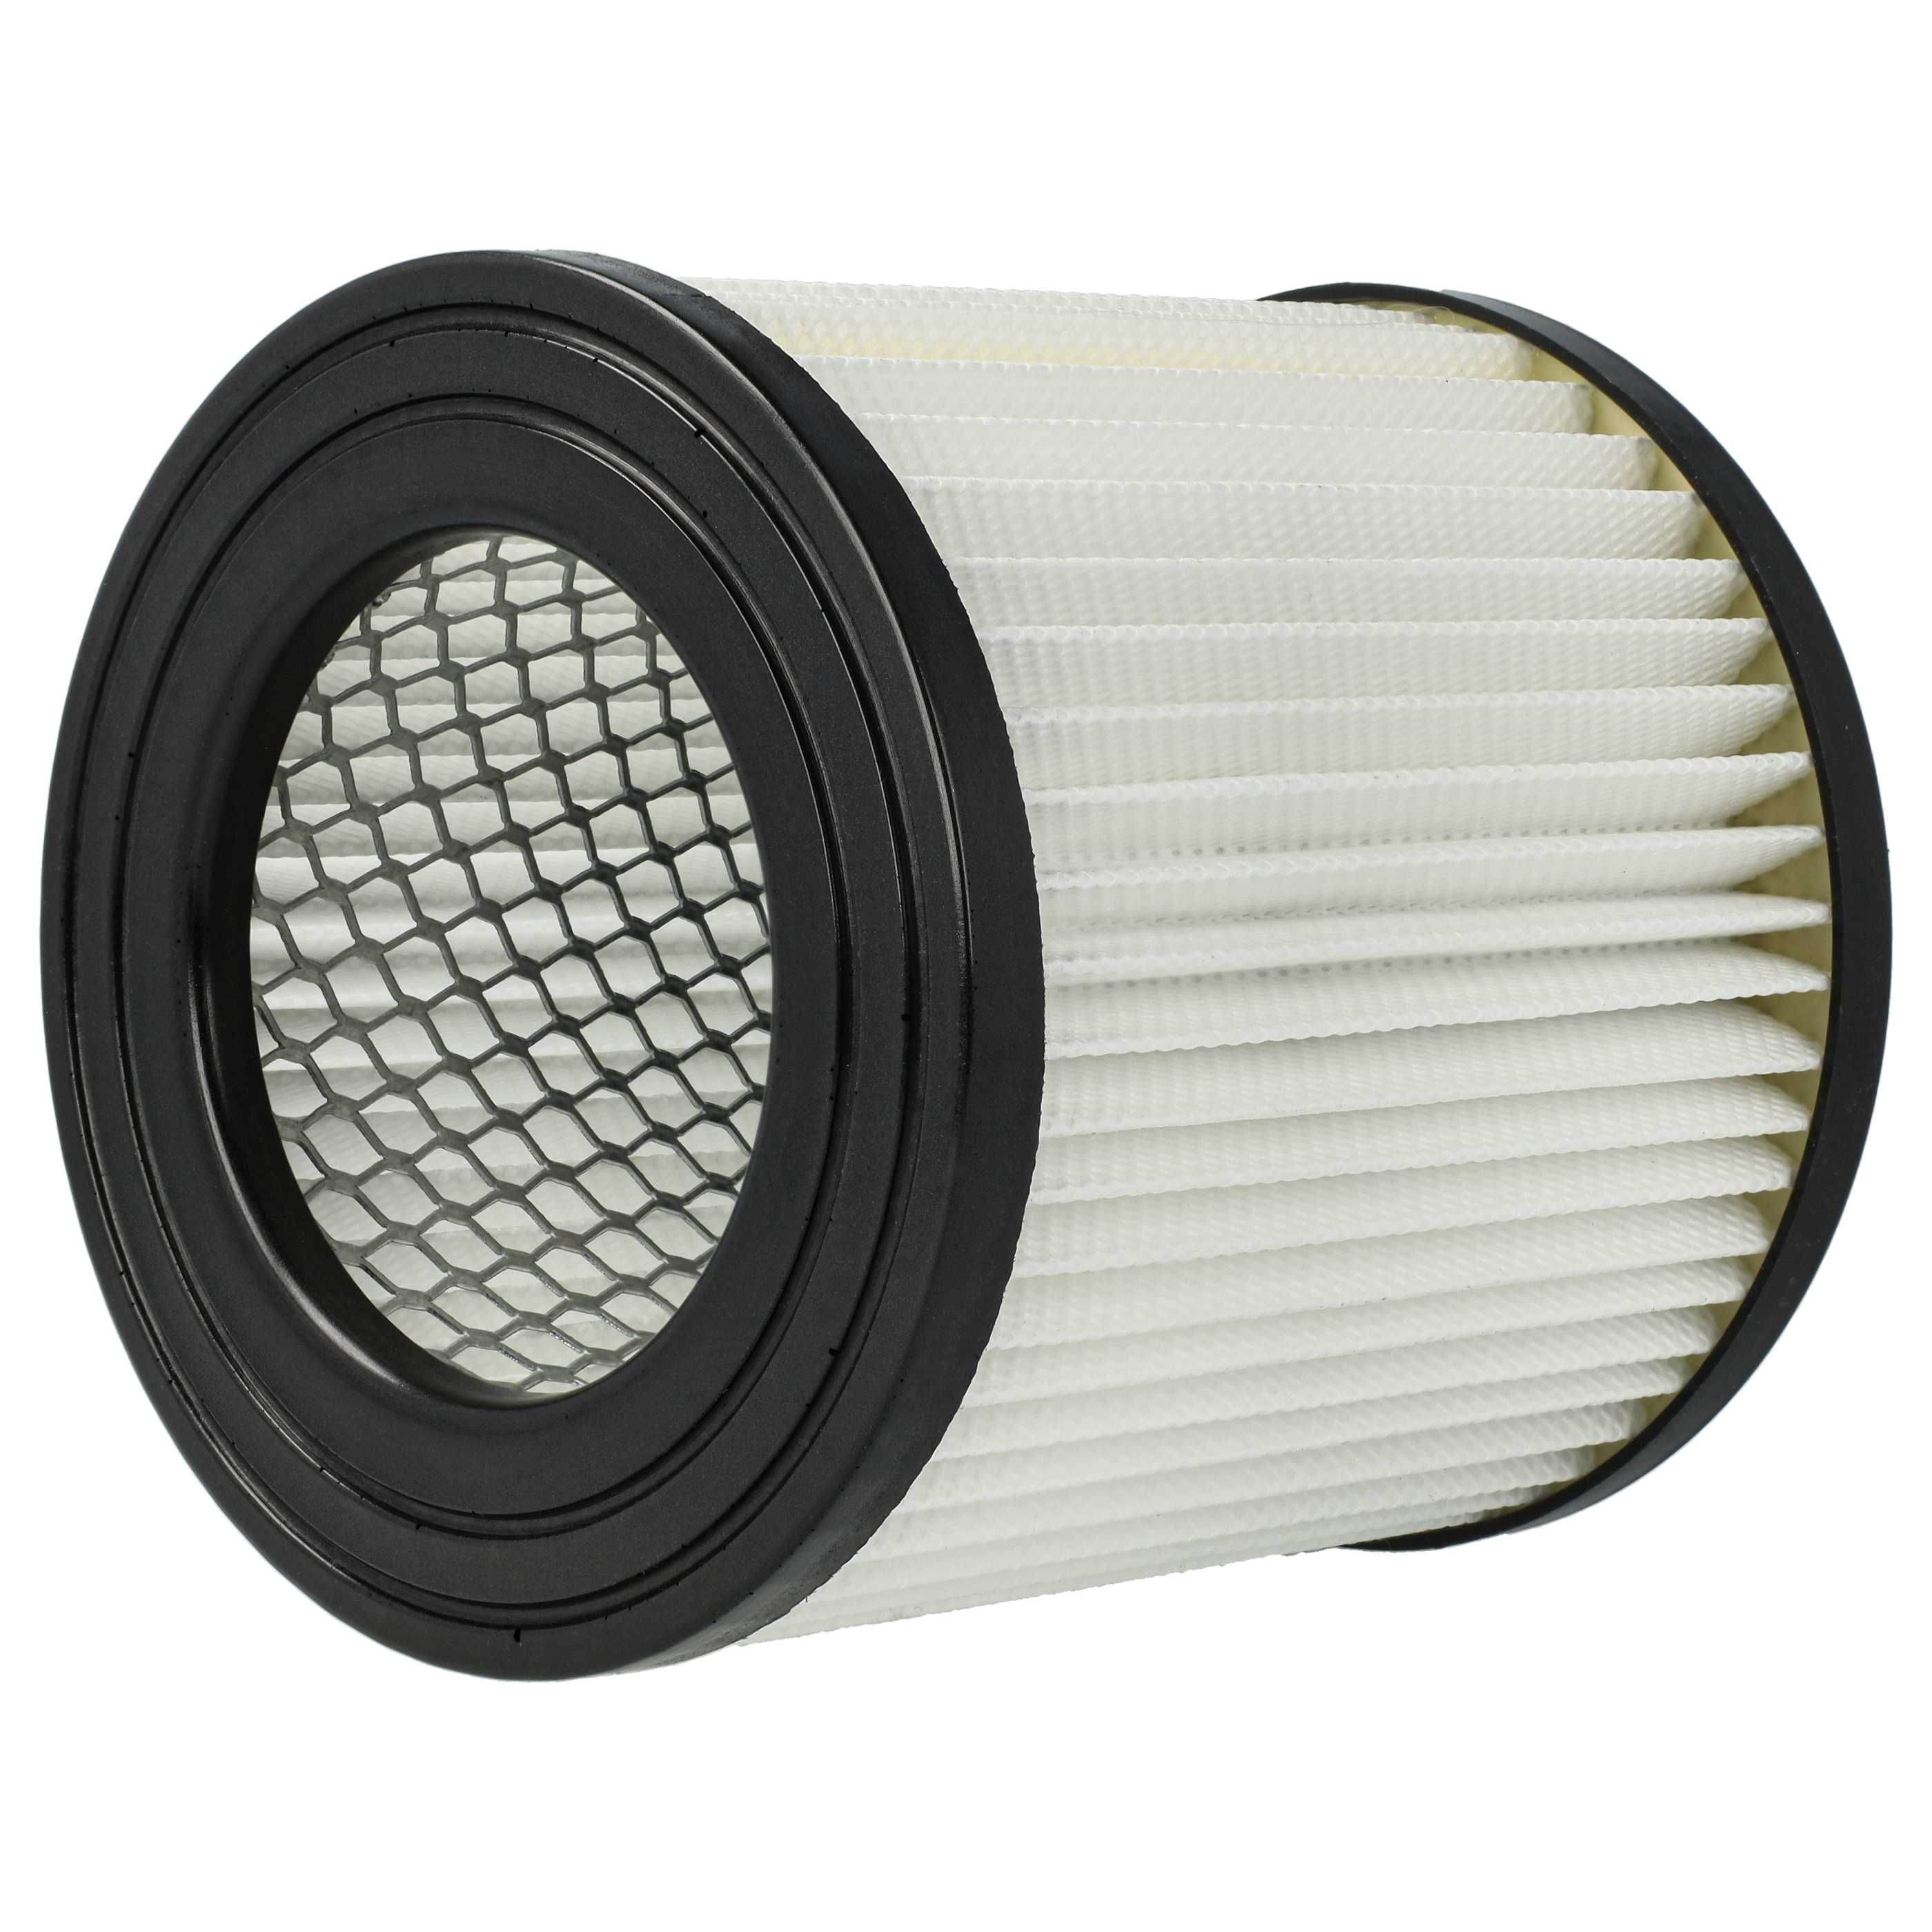 2x Filtres remplace Scheppach 7907702702 pour aspirateur - filtre HEPA